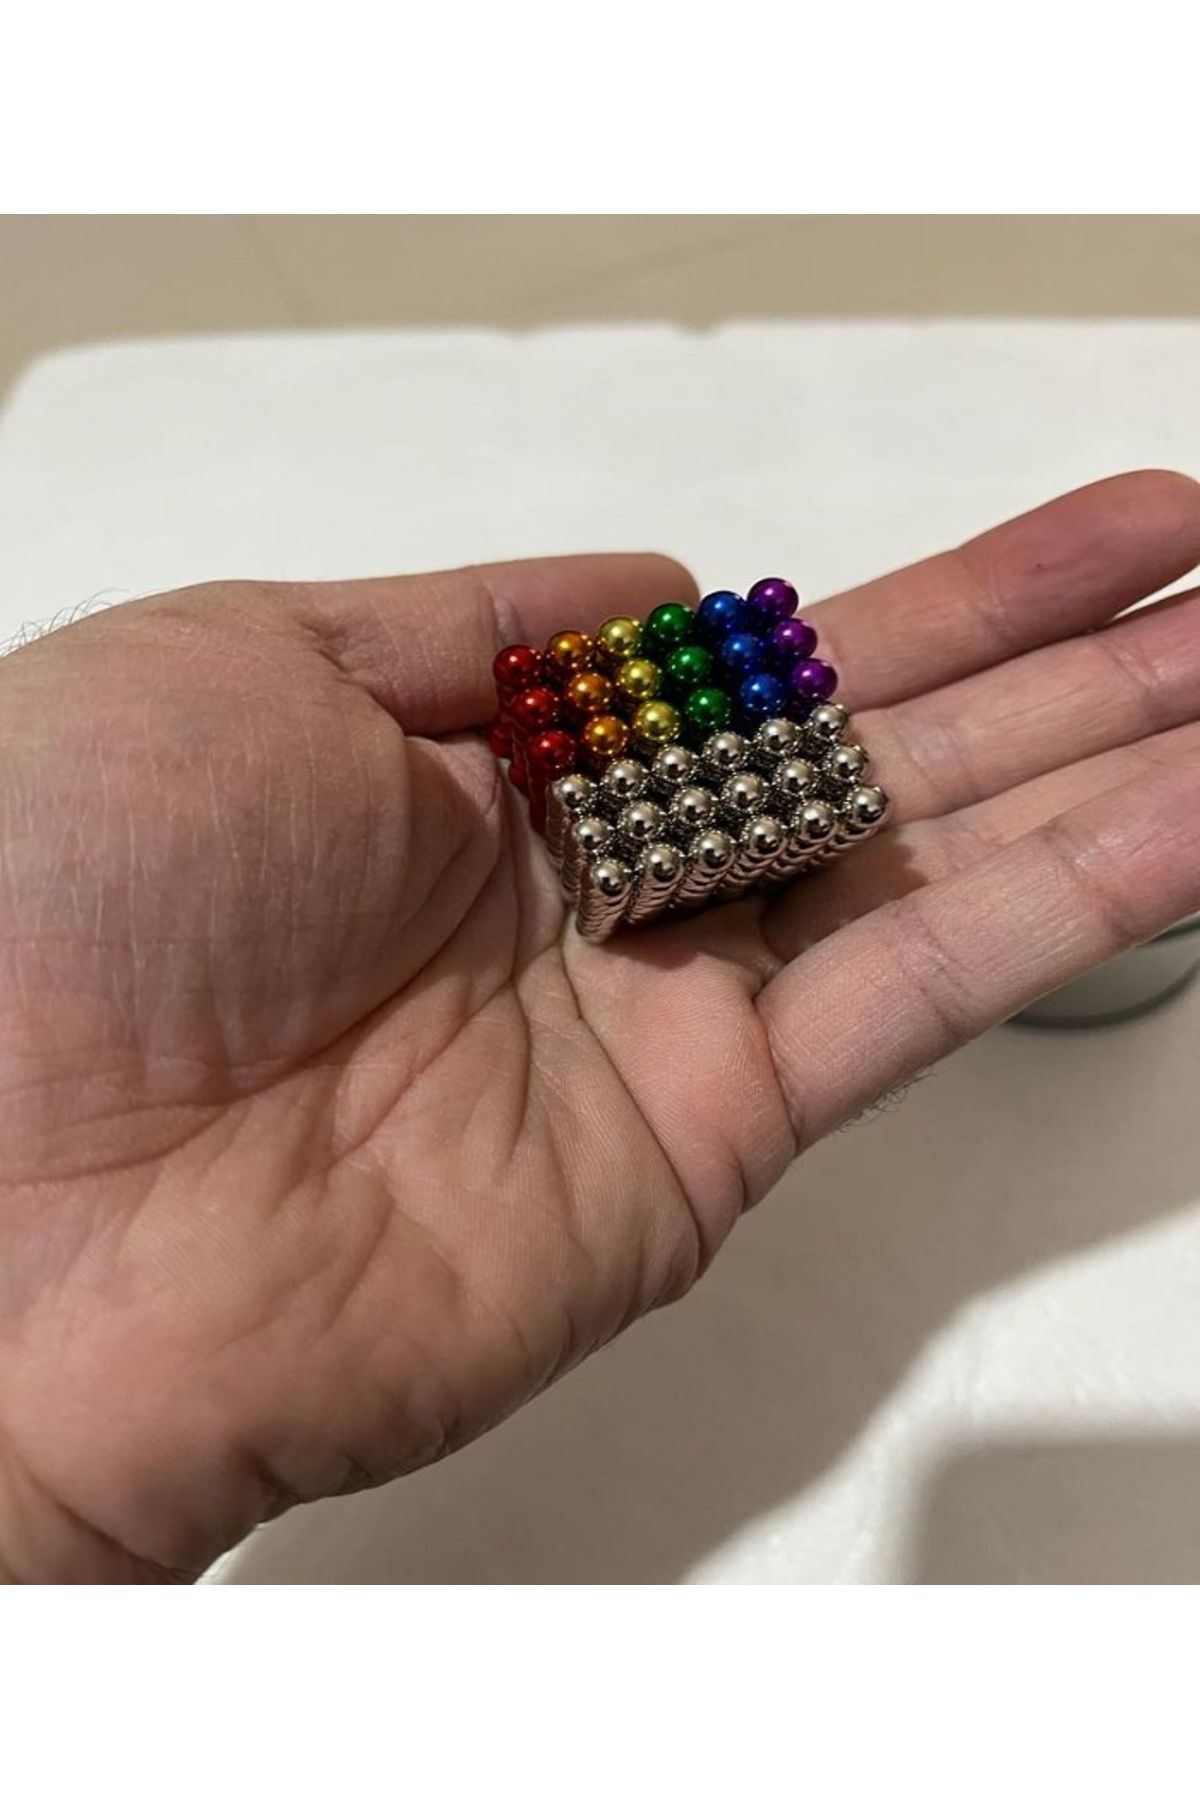 RICHIE Boncuk Mıknatıs 216 Adet 5mm Mıknatıslı Lego Magnet Neo Cube Gümüş Neo Karışık